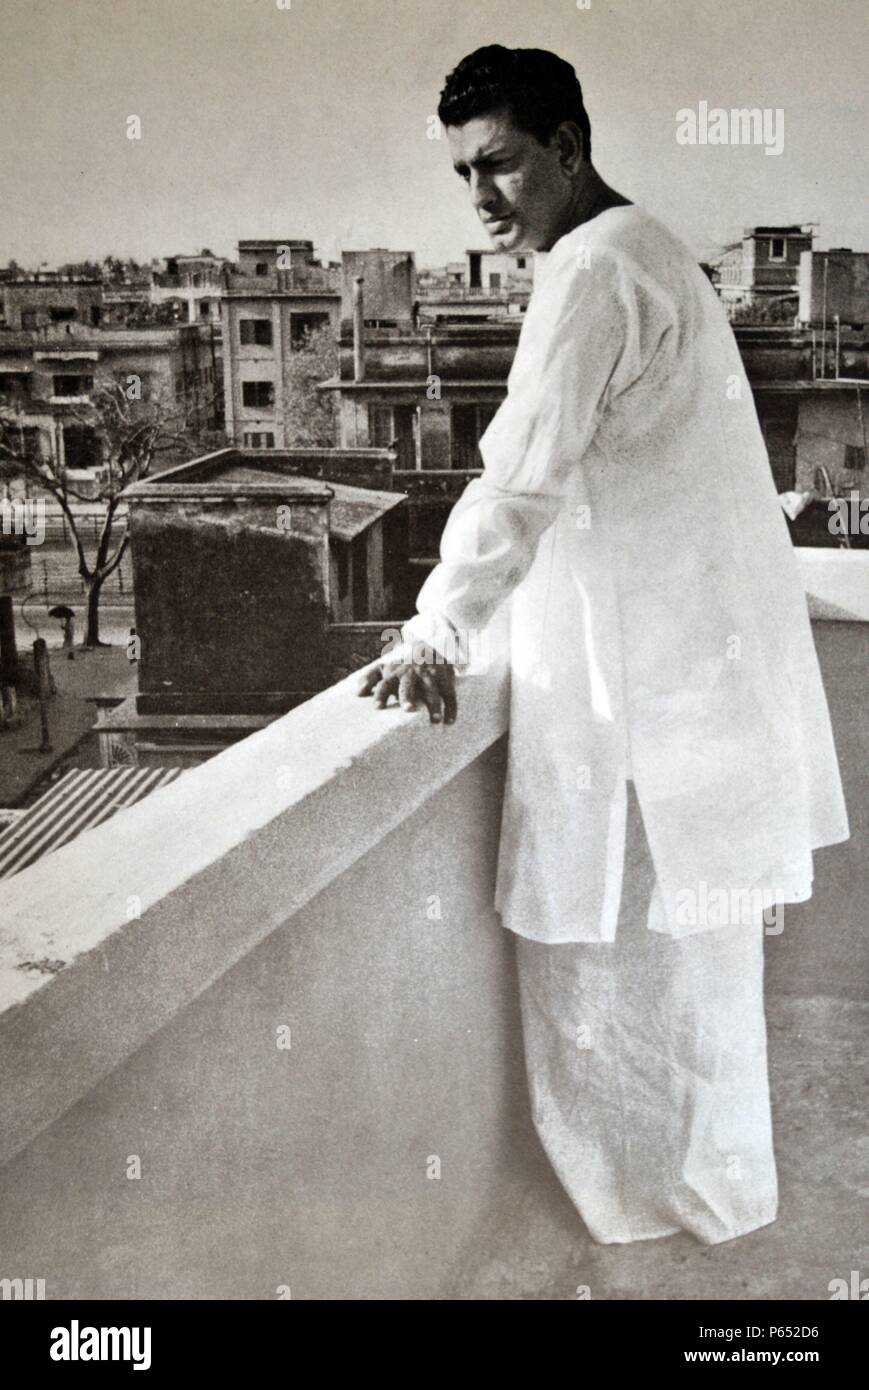 Satyajit Ray (2. Mai 1921 – 23. April 1992) indische Filmemacher, gilt als eines der größten Auteurs des Weltkinos. Stockfoto